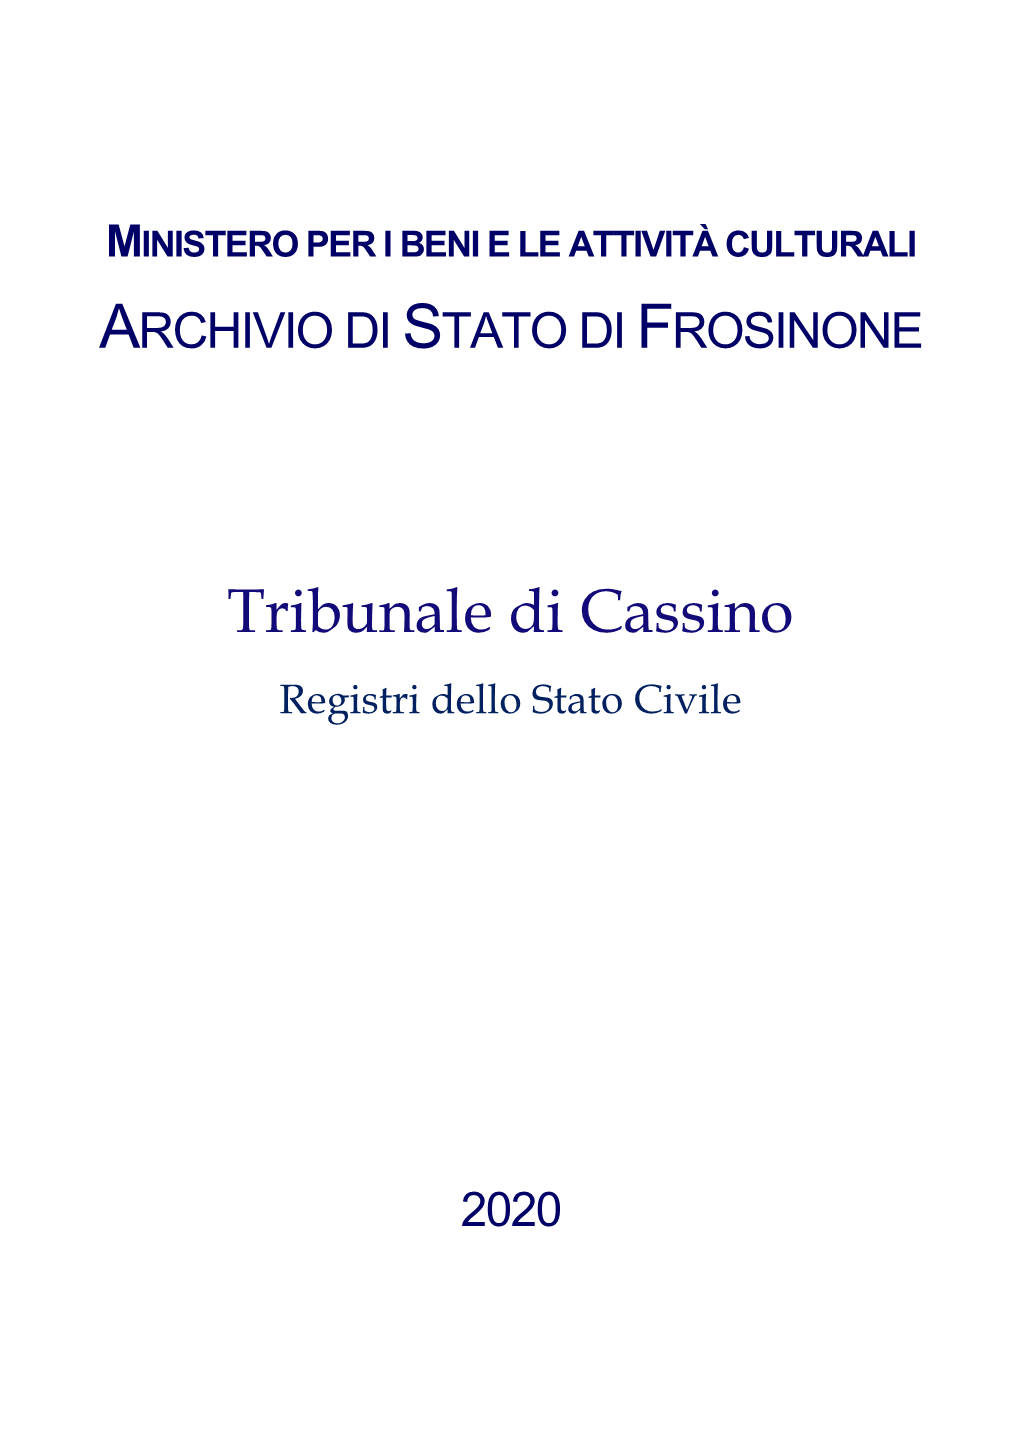 Registri Di Stato Civile Del Tribunale Di Cassino